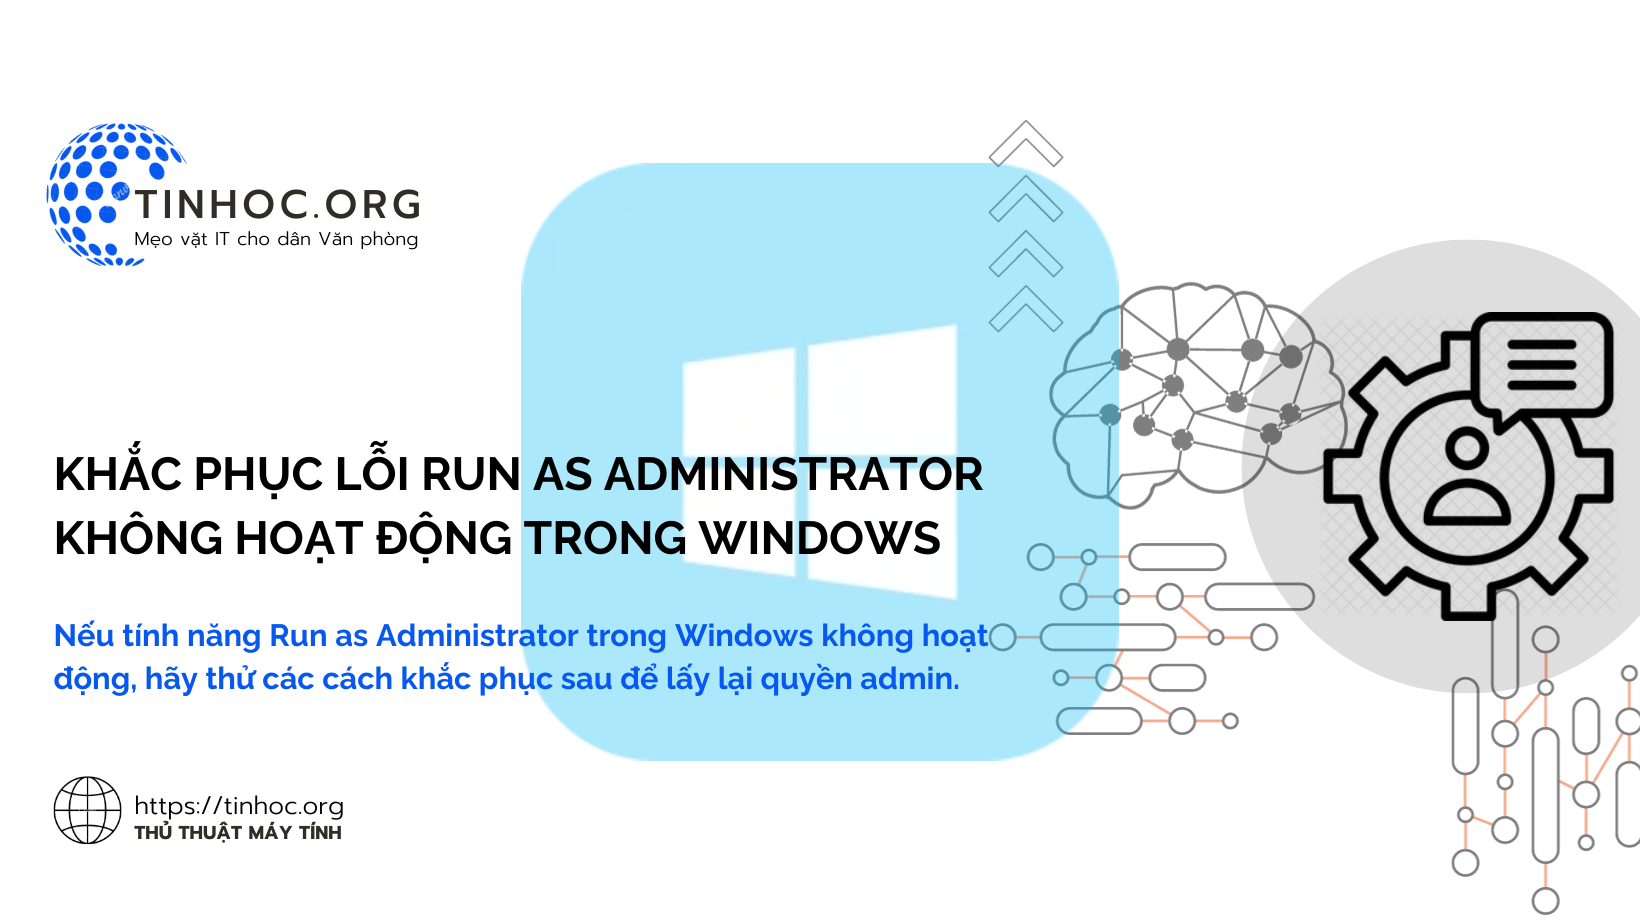 Nếu tính năng Run as Administrator trong Windows không hoạt động, hãy thử các cách khắc phục sau để lấy lại quyền admin.